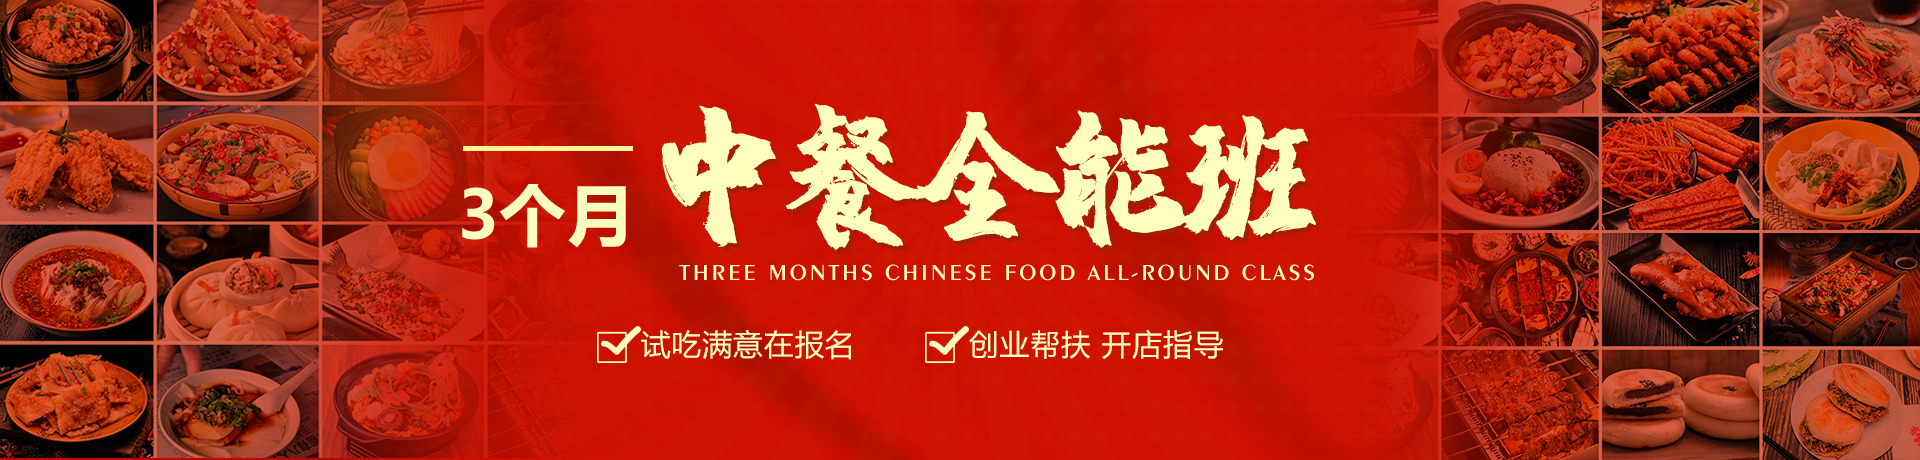 3个月中餐班banner.jpg